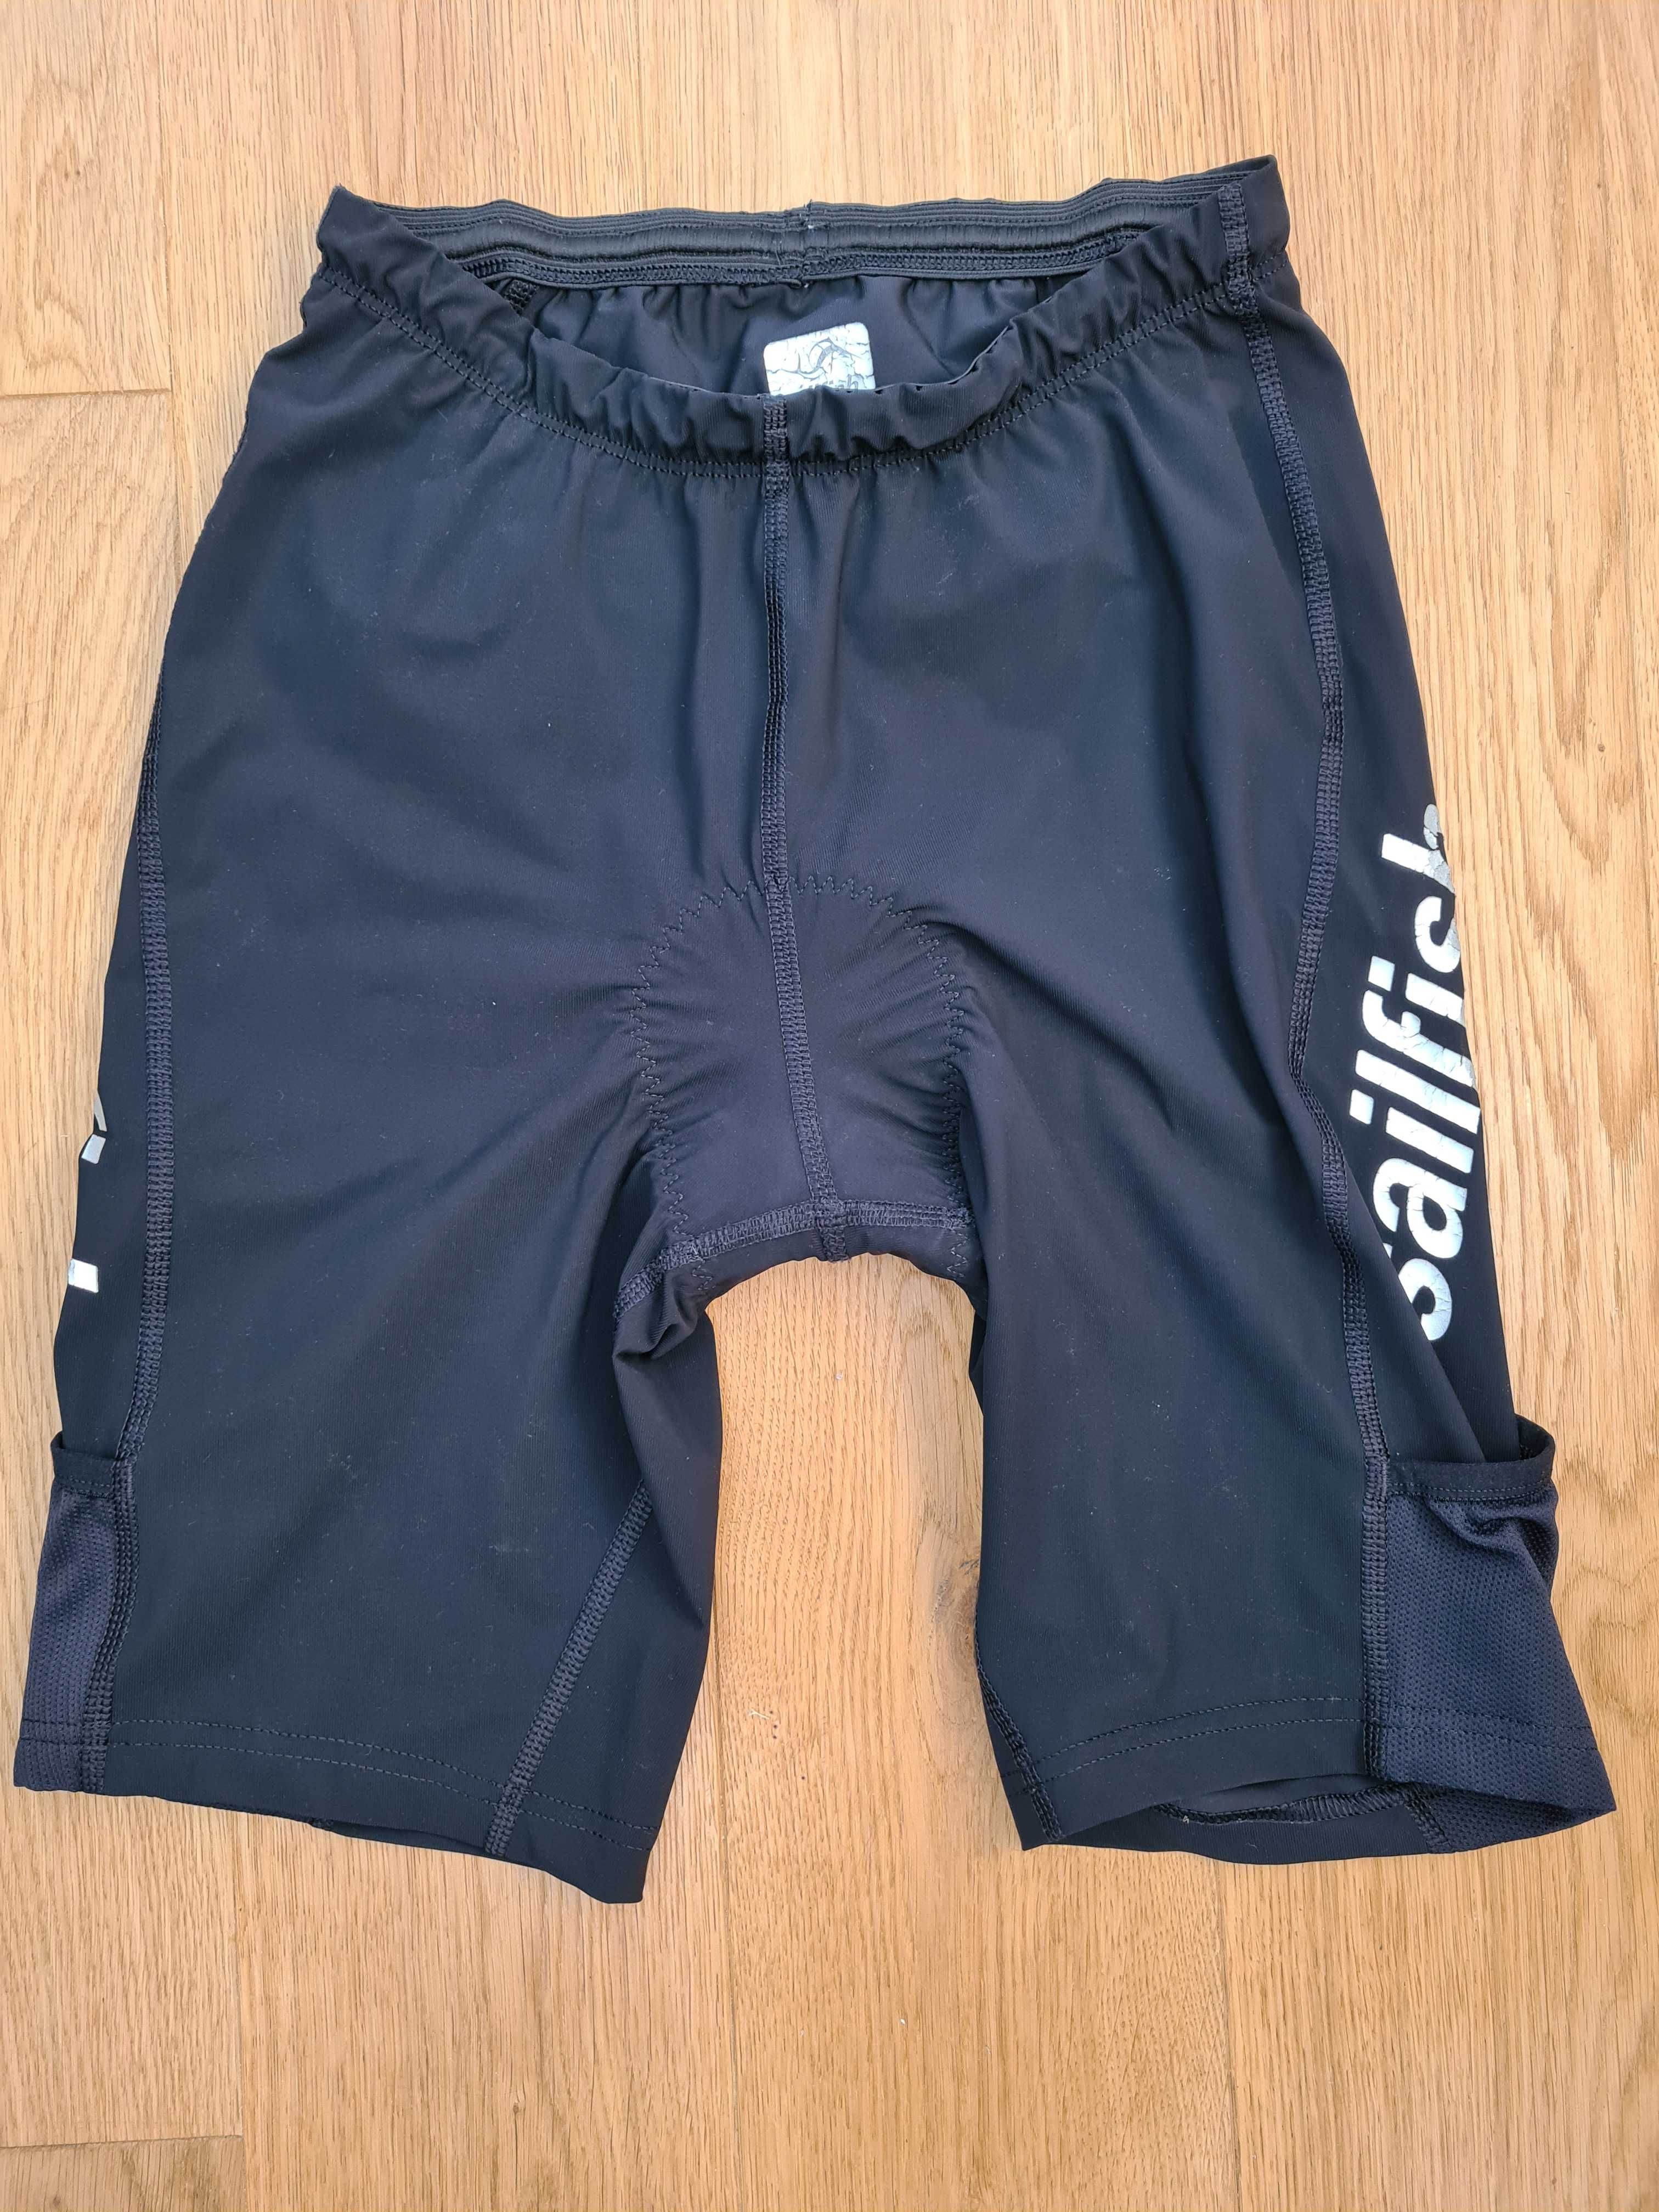 Startowy strój triathlonowy Sailfish dwuczęściowy męski czarno-biały M